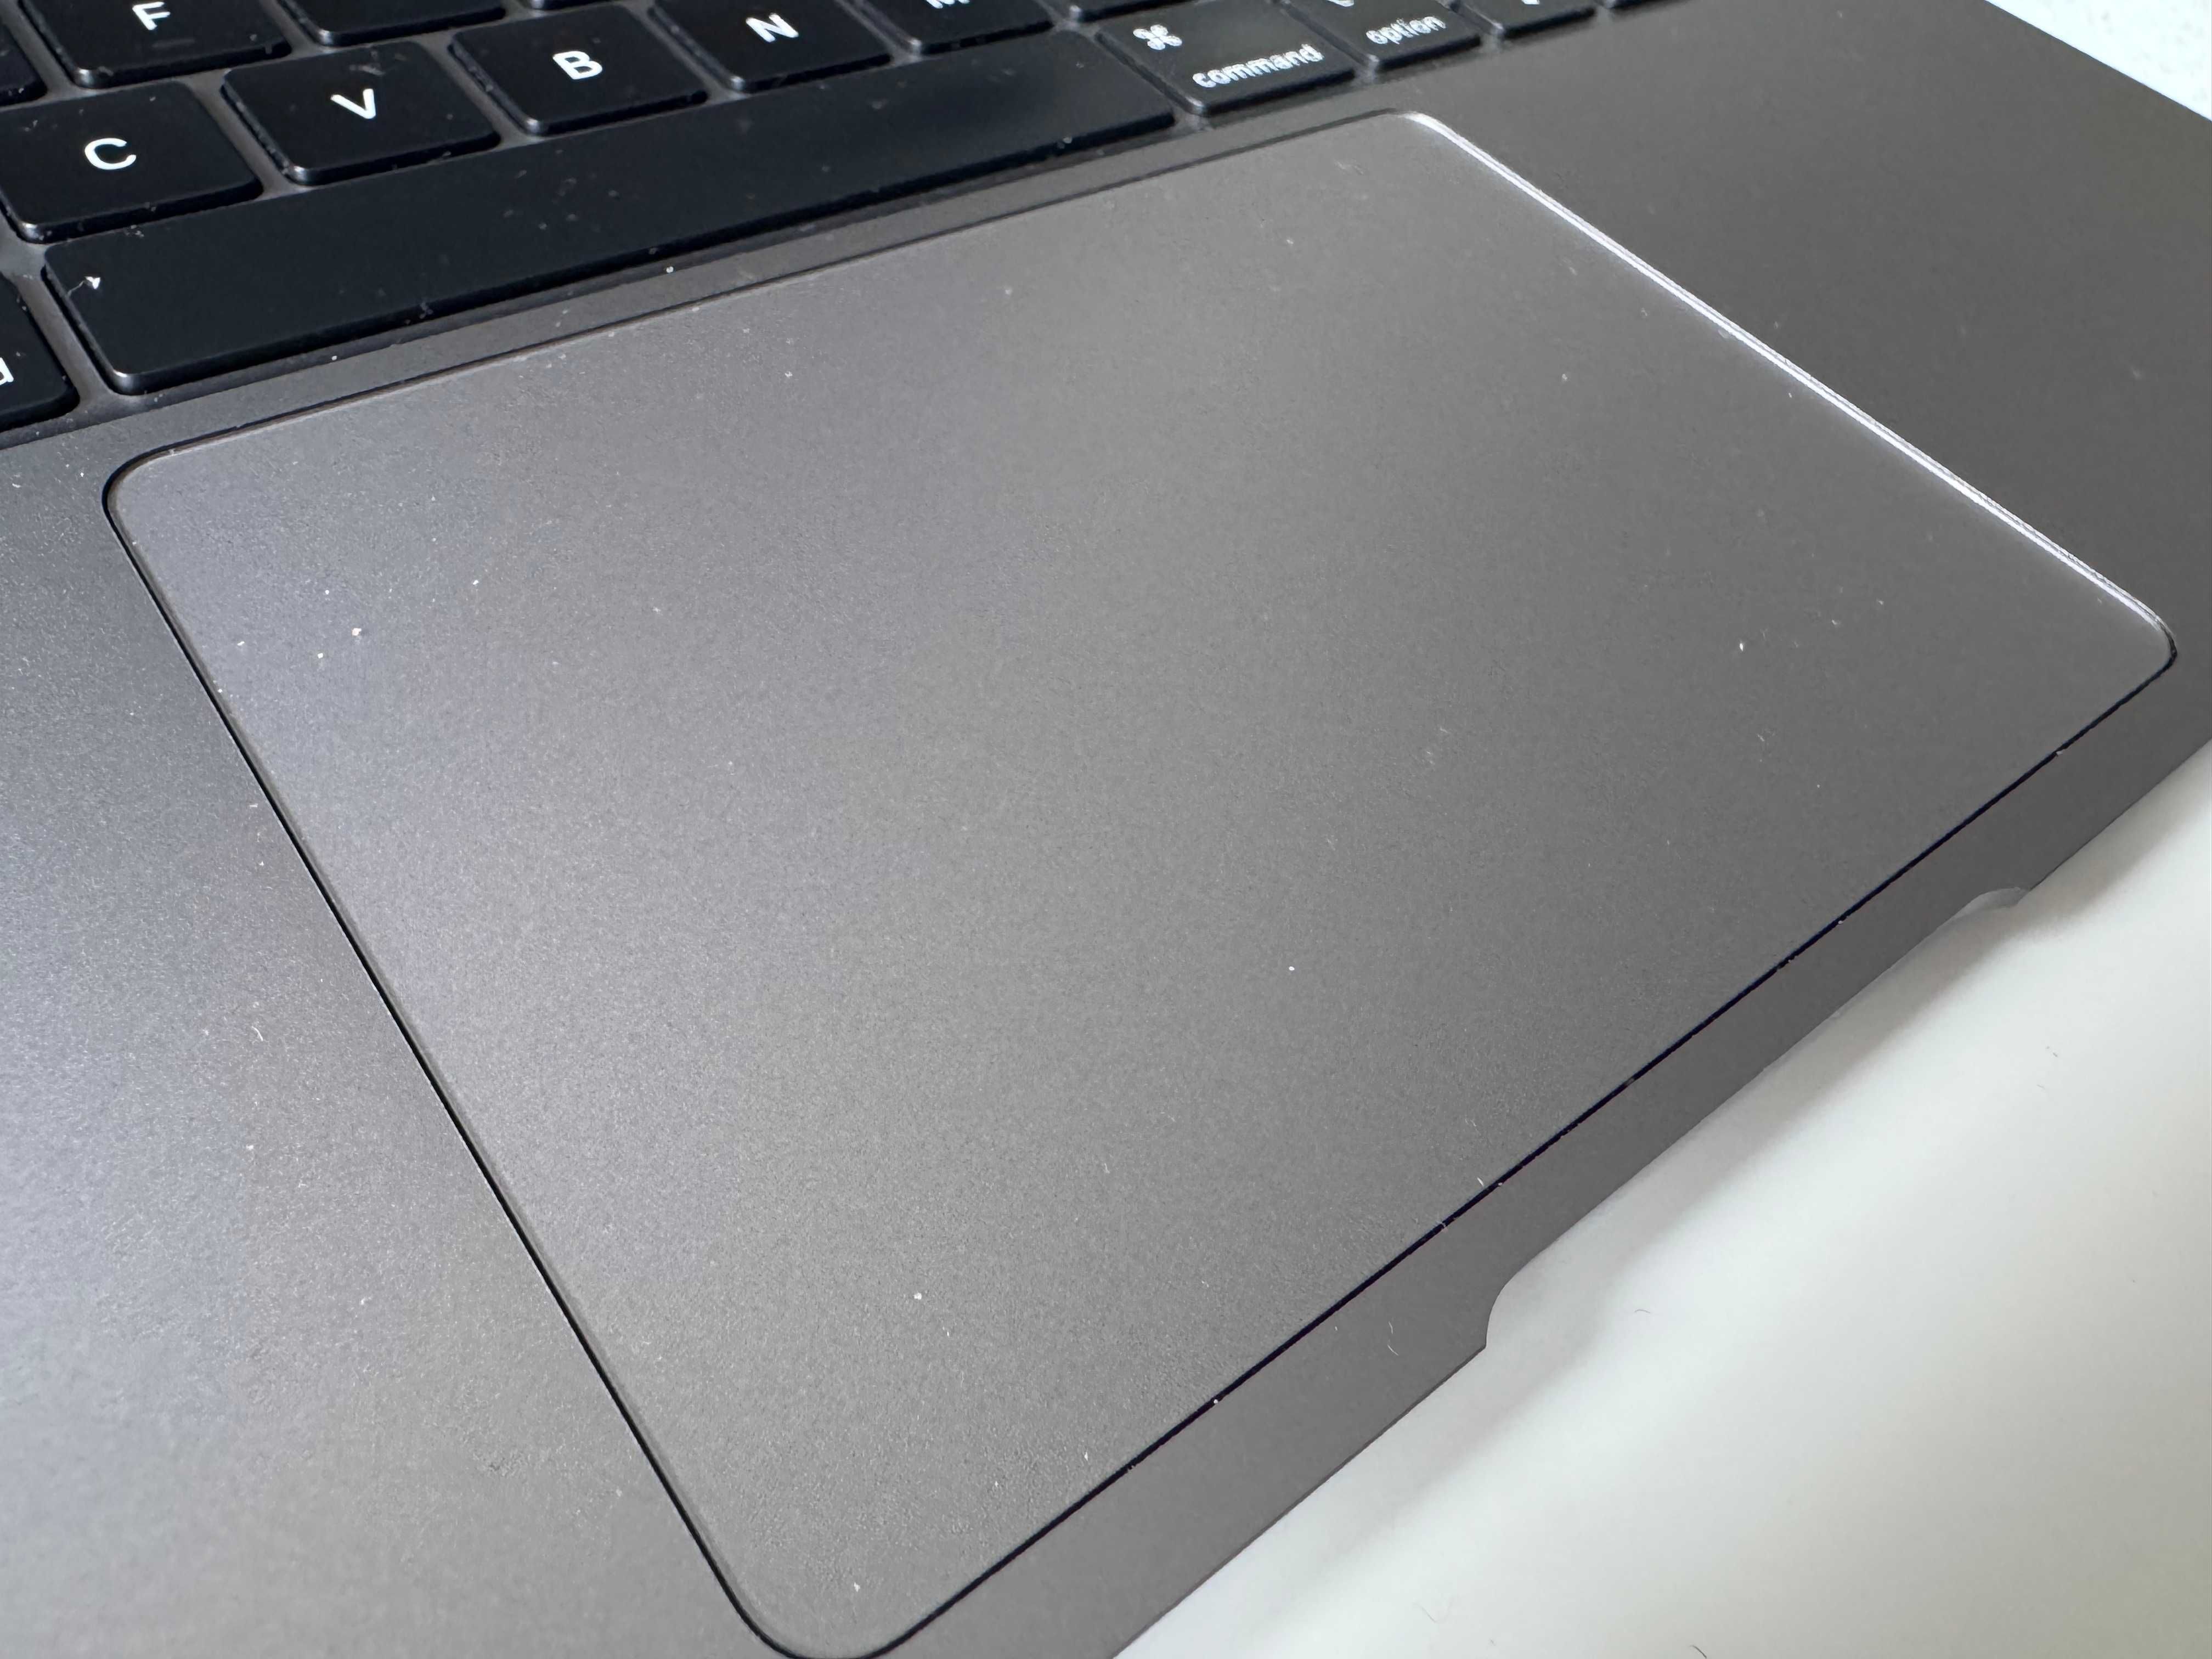 Laptop MacBook Air M1 16GB 512 SSD Grey (2022)